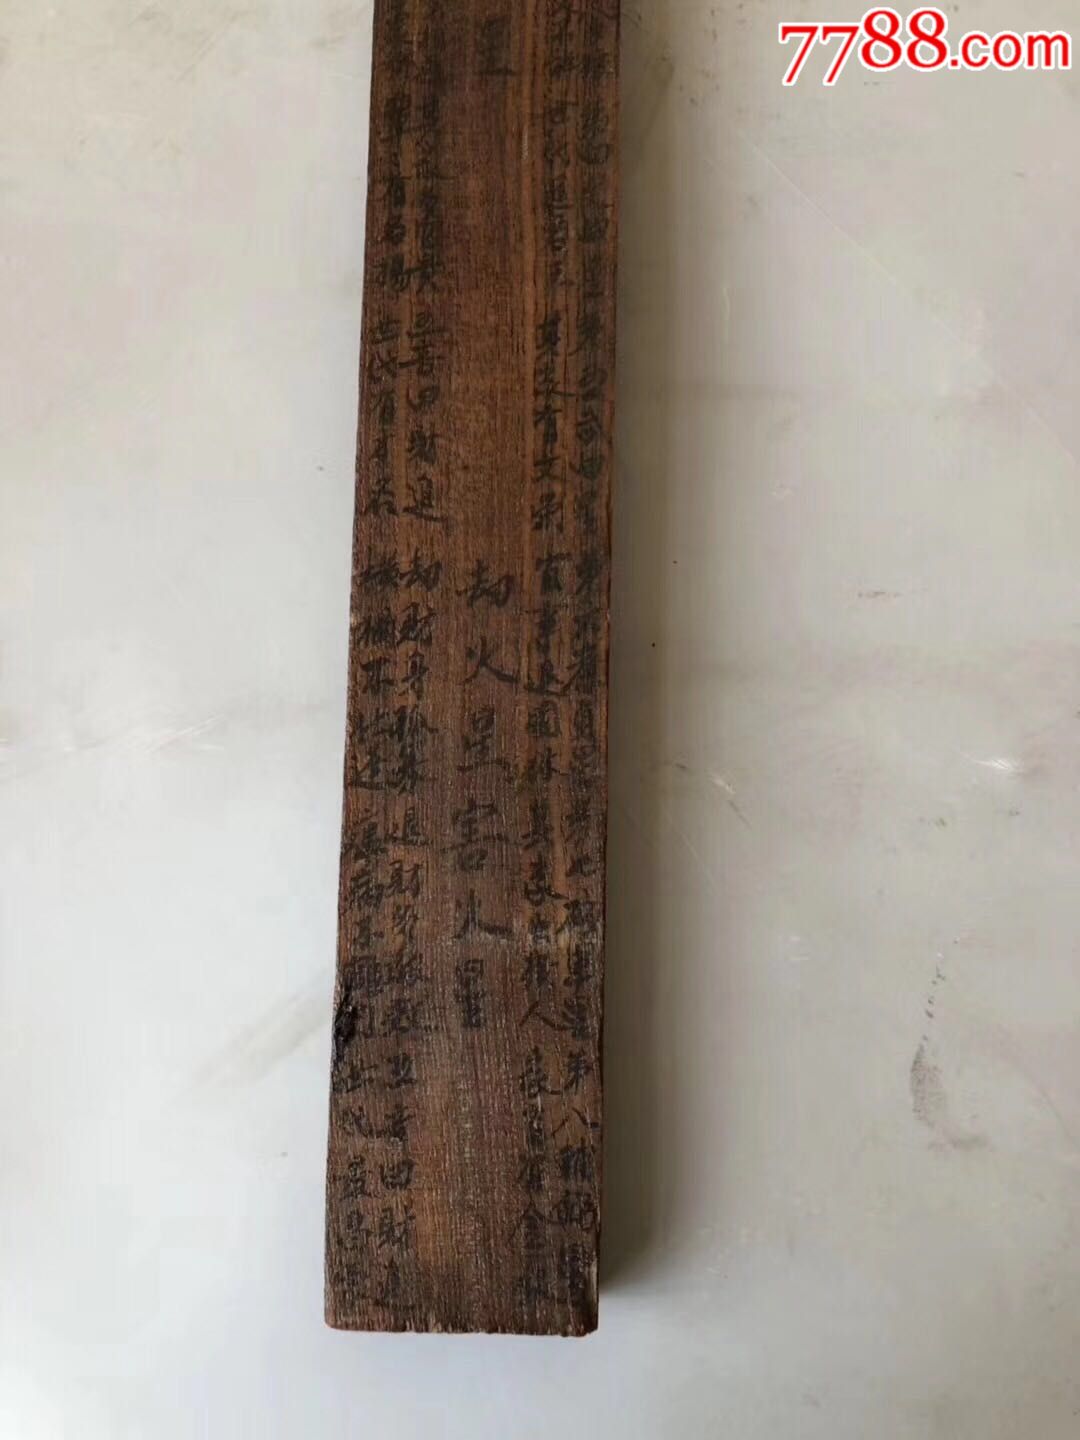 清代老鲁班尺鲁班成名器,108件木匠工具之首.据说木工